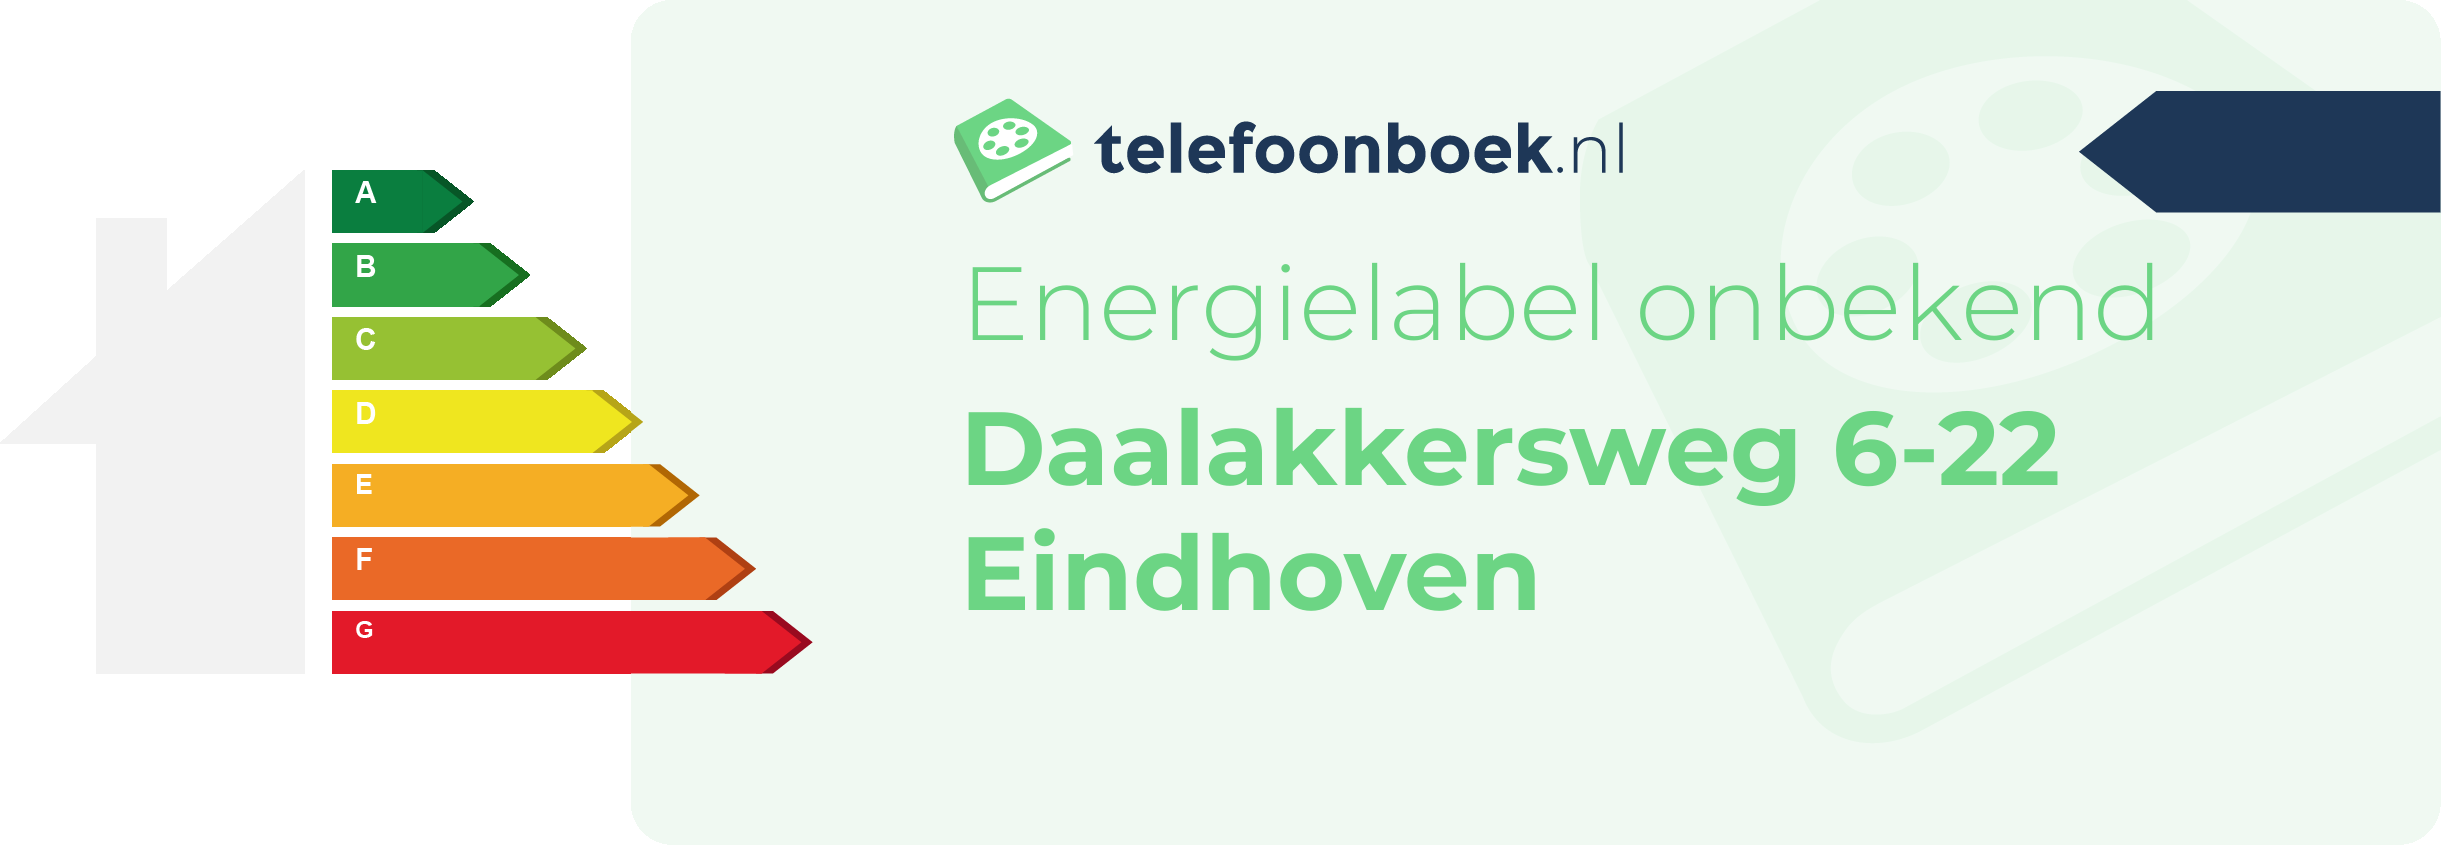 Energielabel Daalakkersweg 6-22 Eindhoven